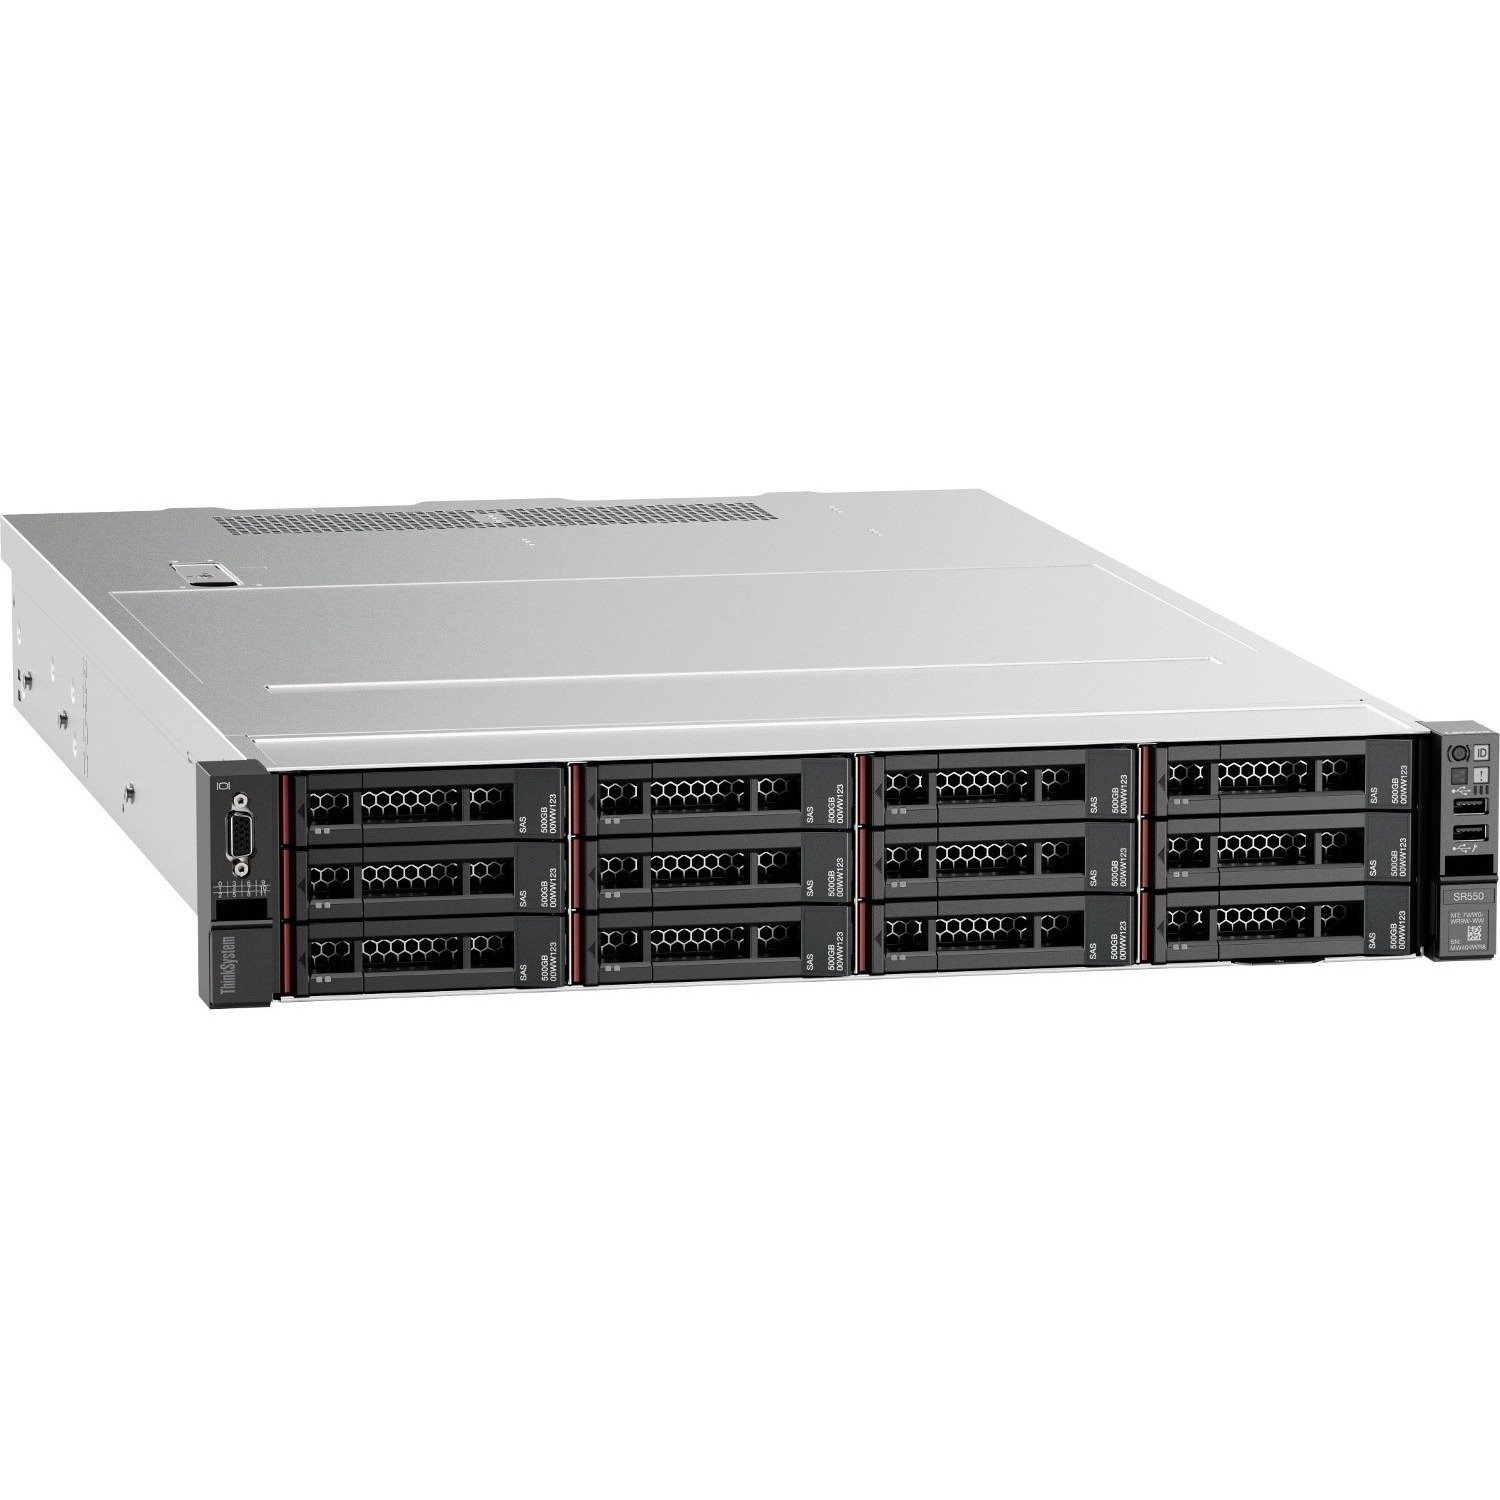 Lenovo ThinkSystem SR550 7X04A07YAU 2U Rack Server - 1 x Intel Xeon Silver 4210 2.20 GHz - 16 GB RAM - Serial ATA/600, 12Gb/s SAS Controller